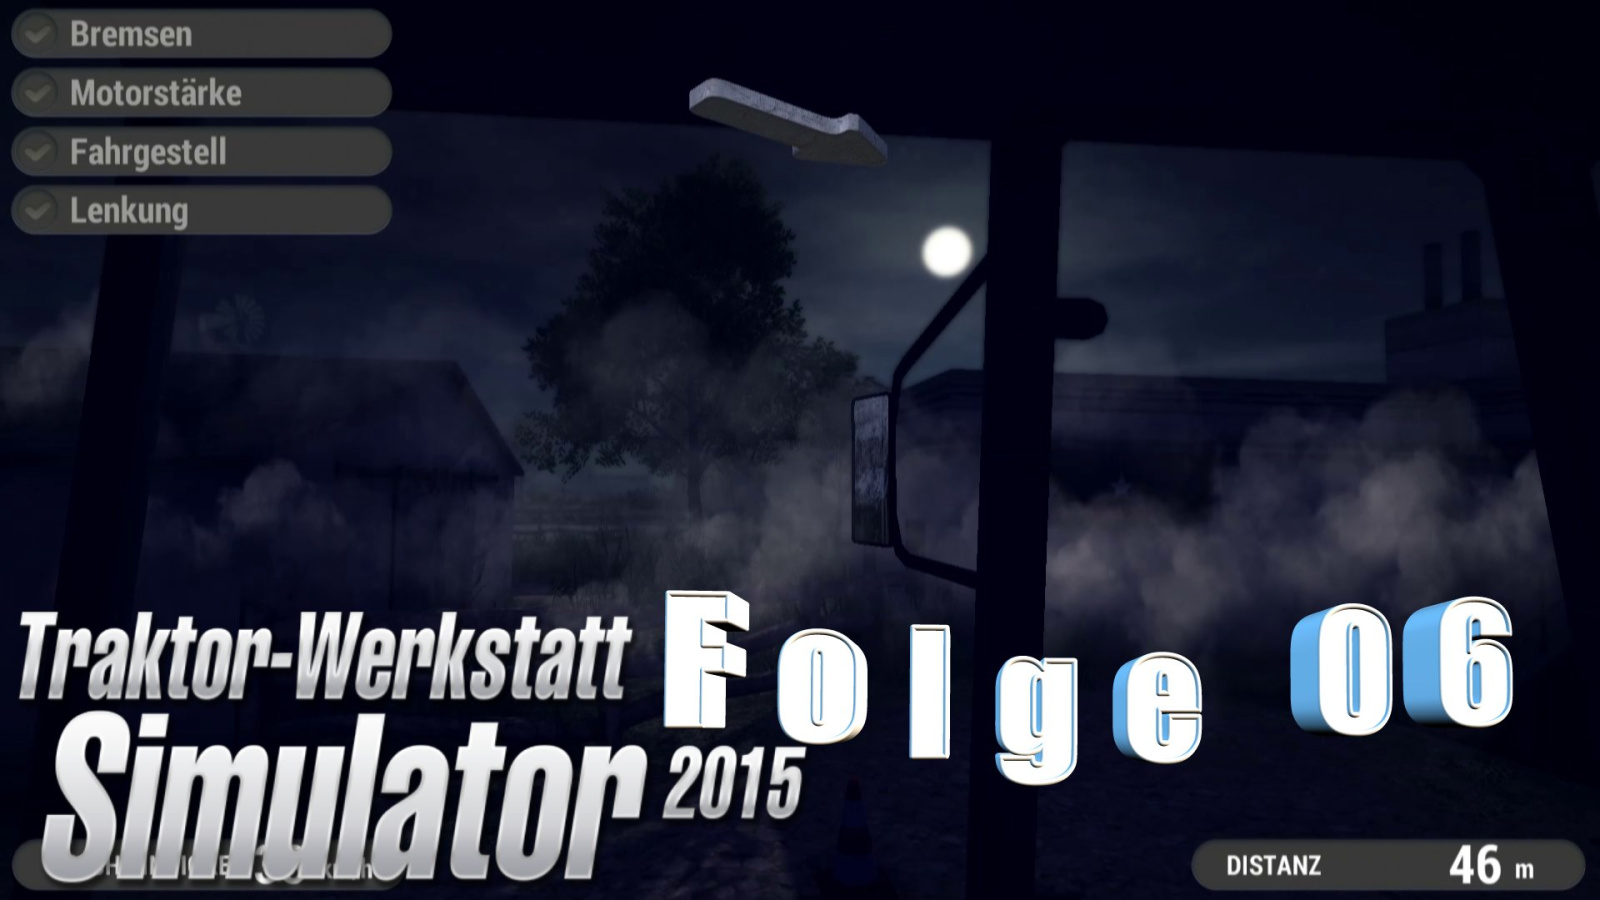 Traktor-Werkstatt Simulator 2015 – Let’s play Folge 06